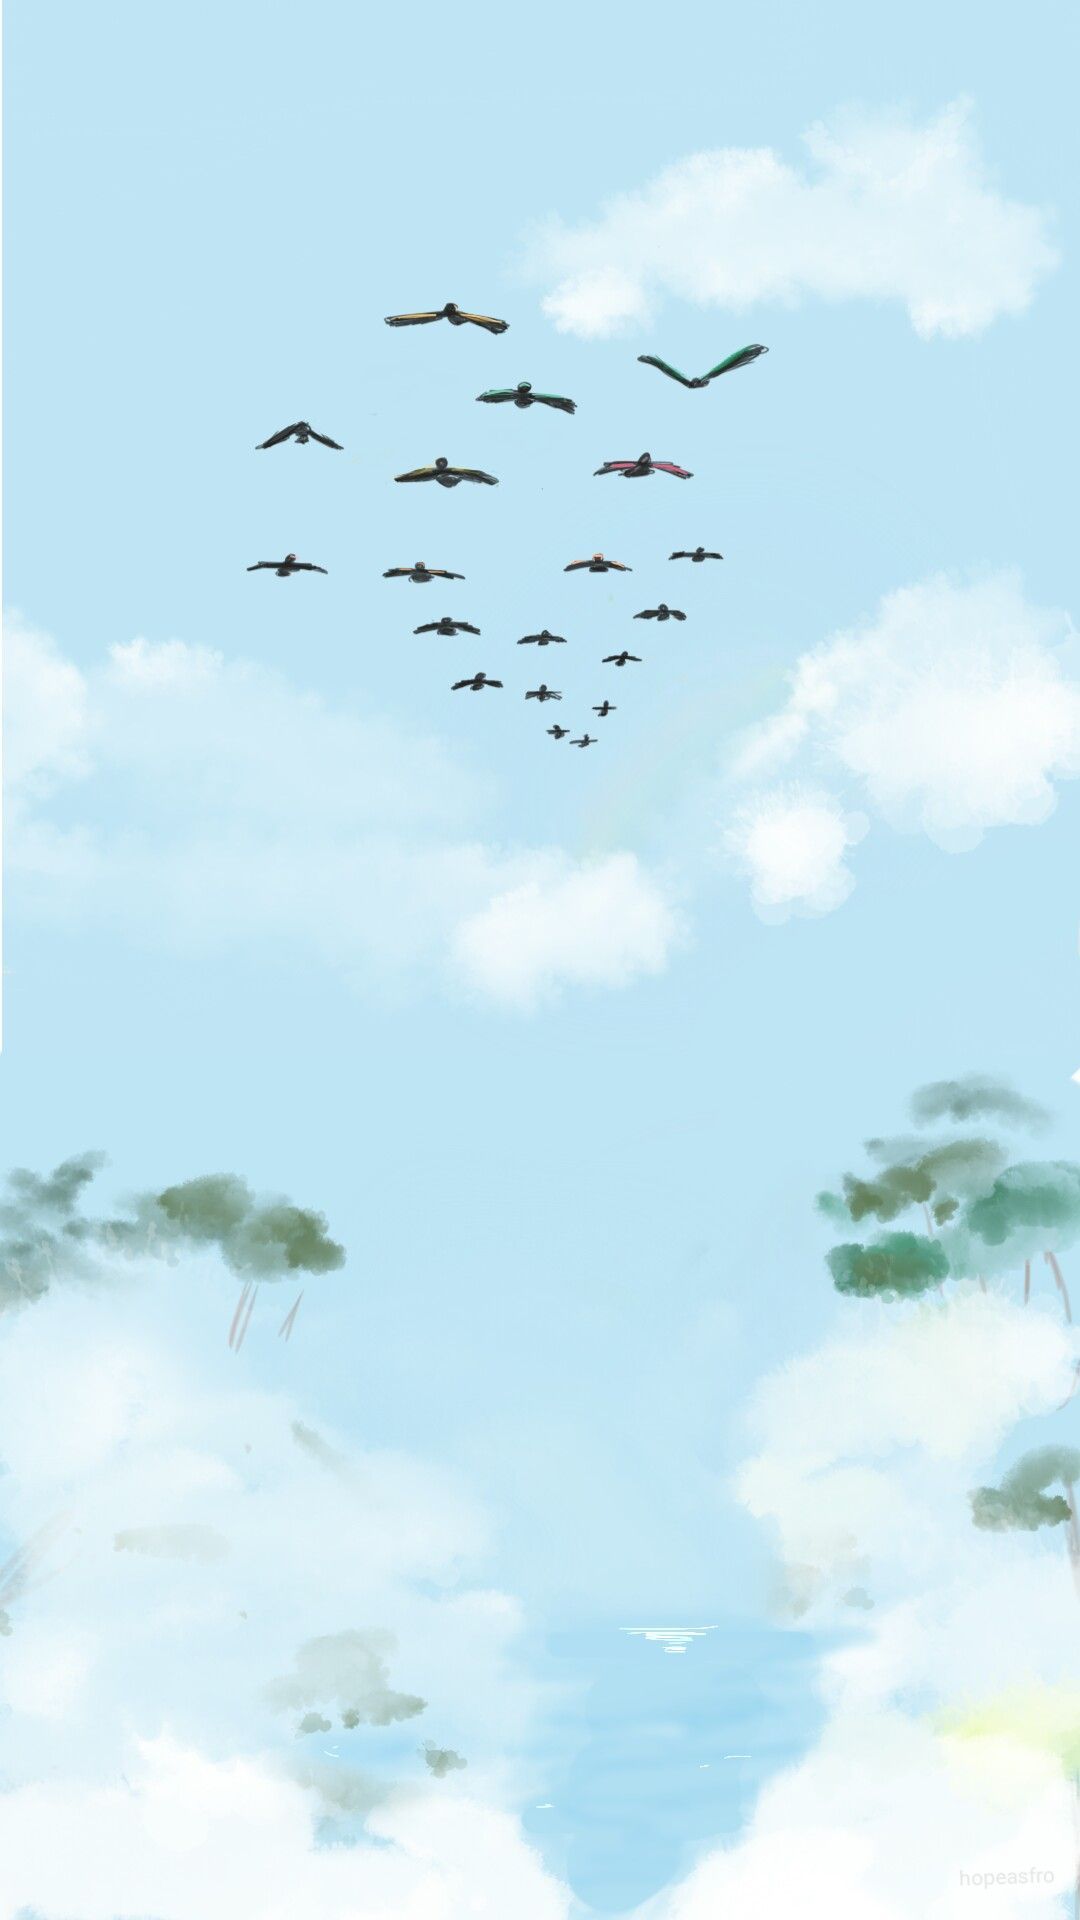 Birds at the coast wallpaper. Art, Sky art, Realistic drawings